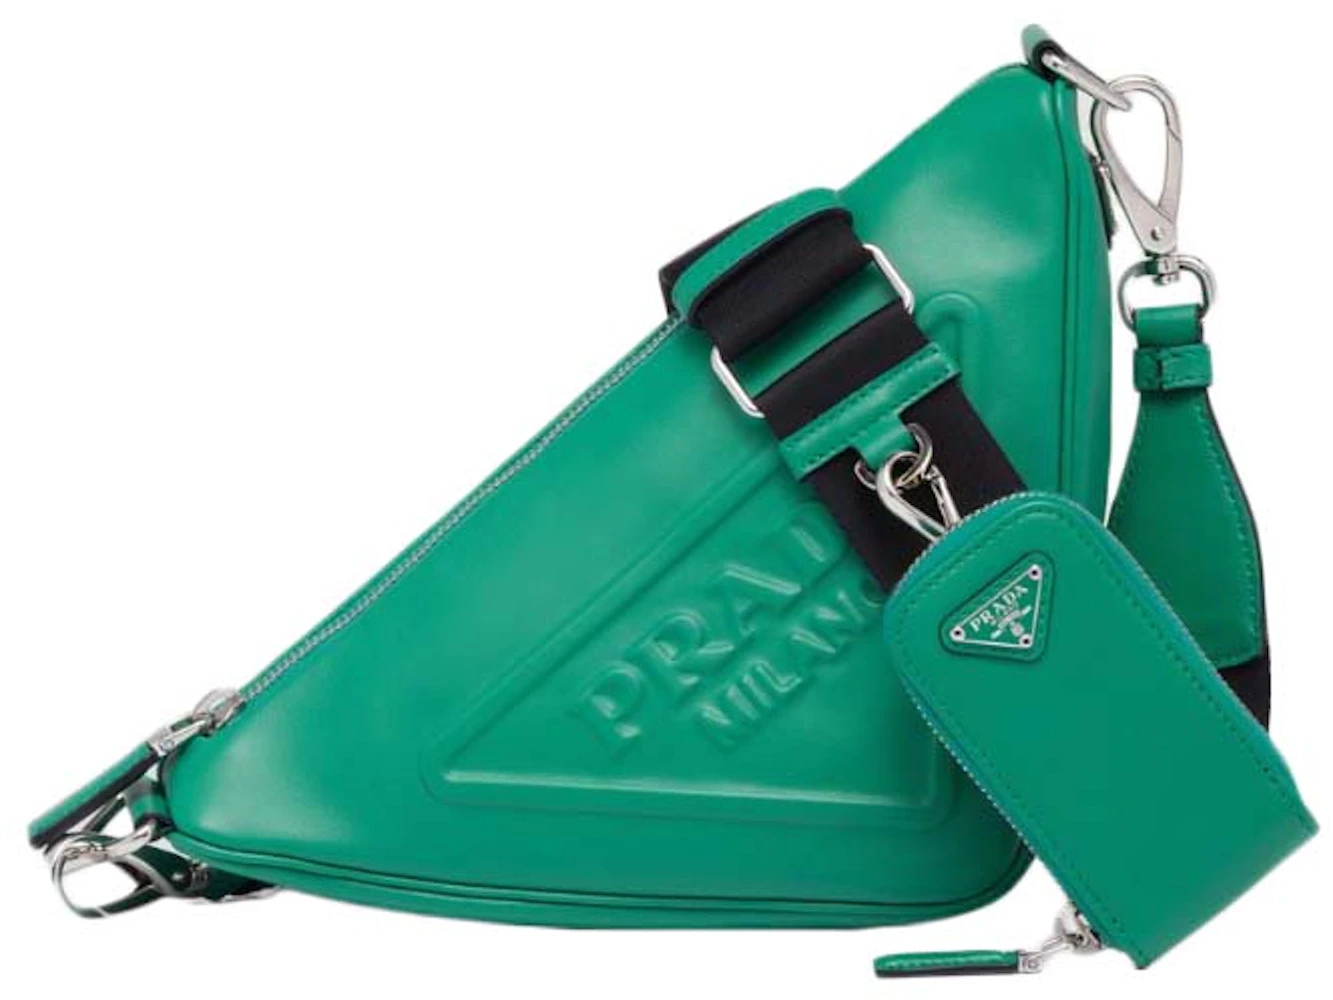 Prada // Lime Green Leather & Silver Chain Shoulder Bag – VSP